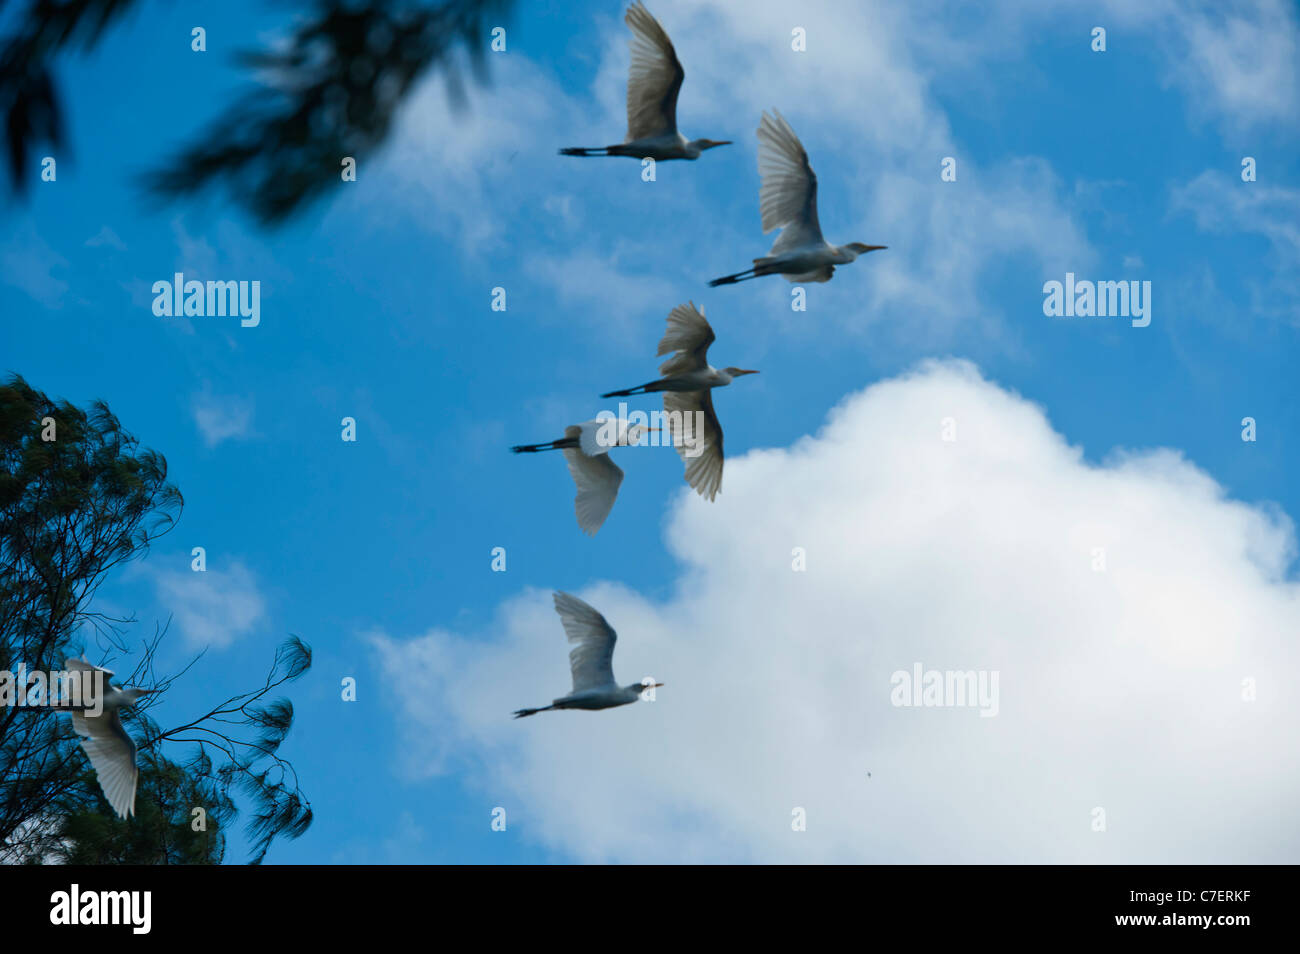 En équilibre,commune d'aigrettes flottant dans Ciel bleu contre des nuages blancs. Banque D'Images